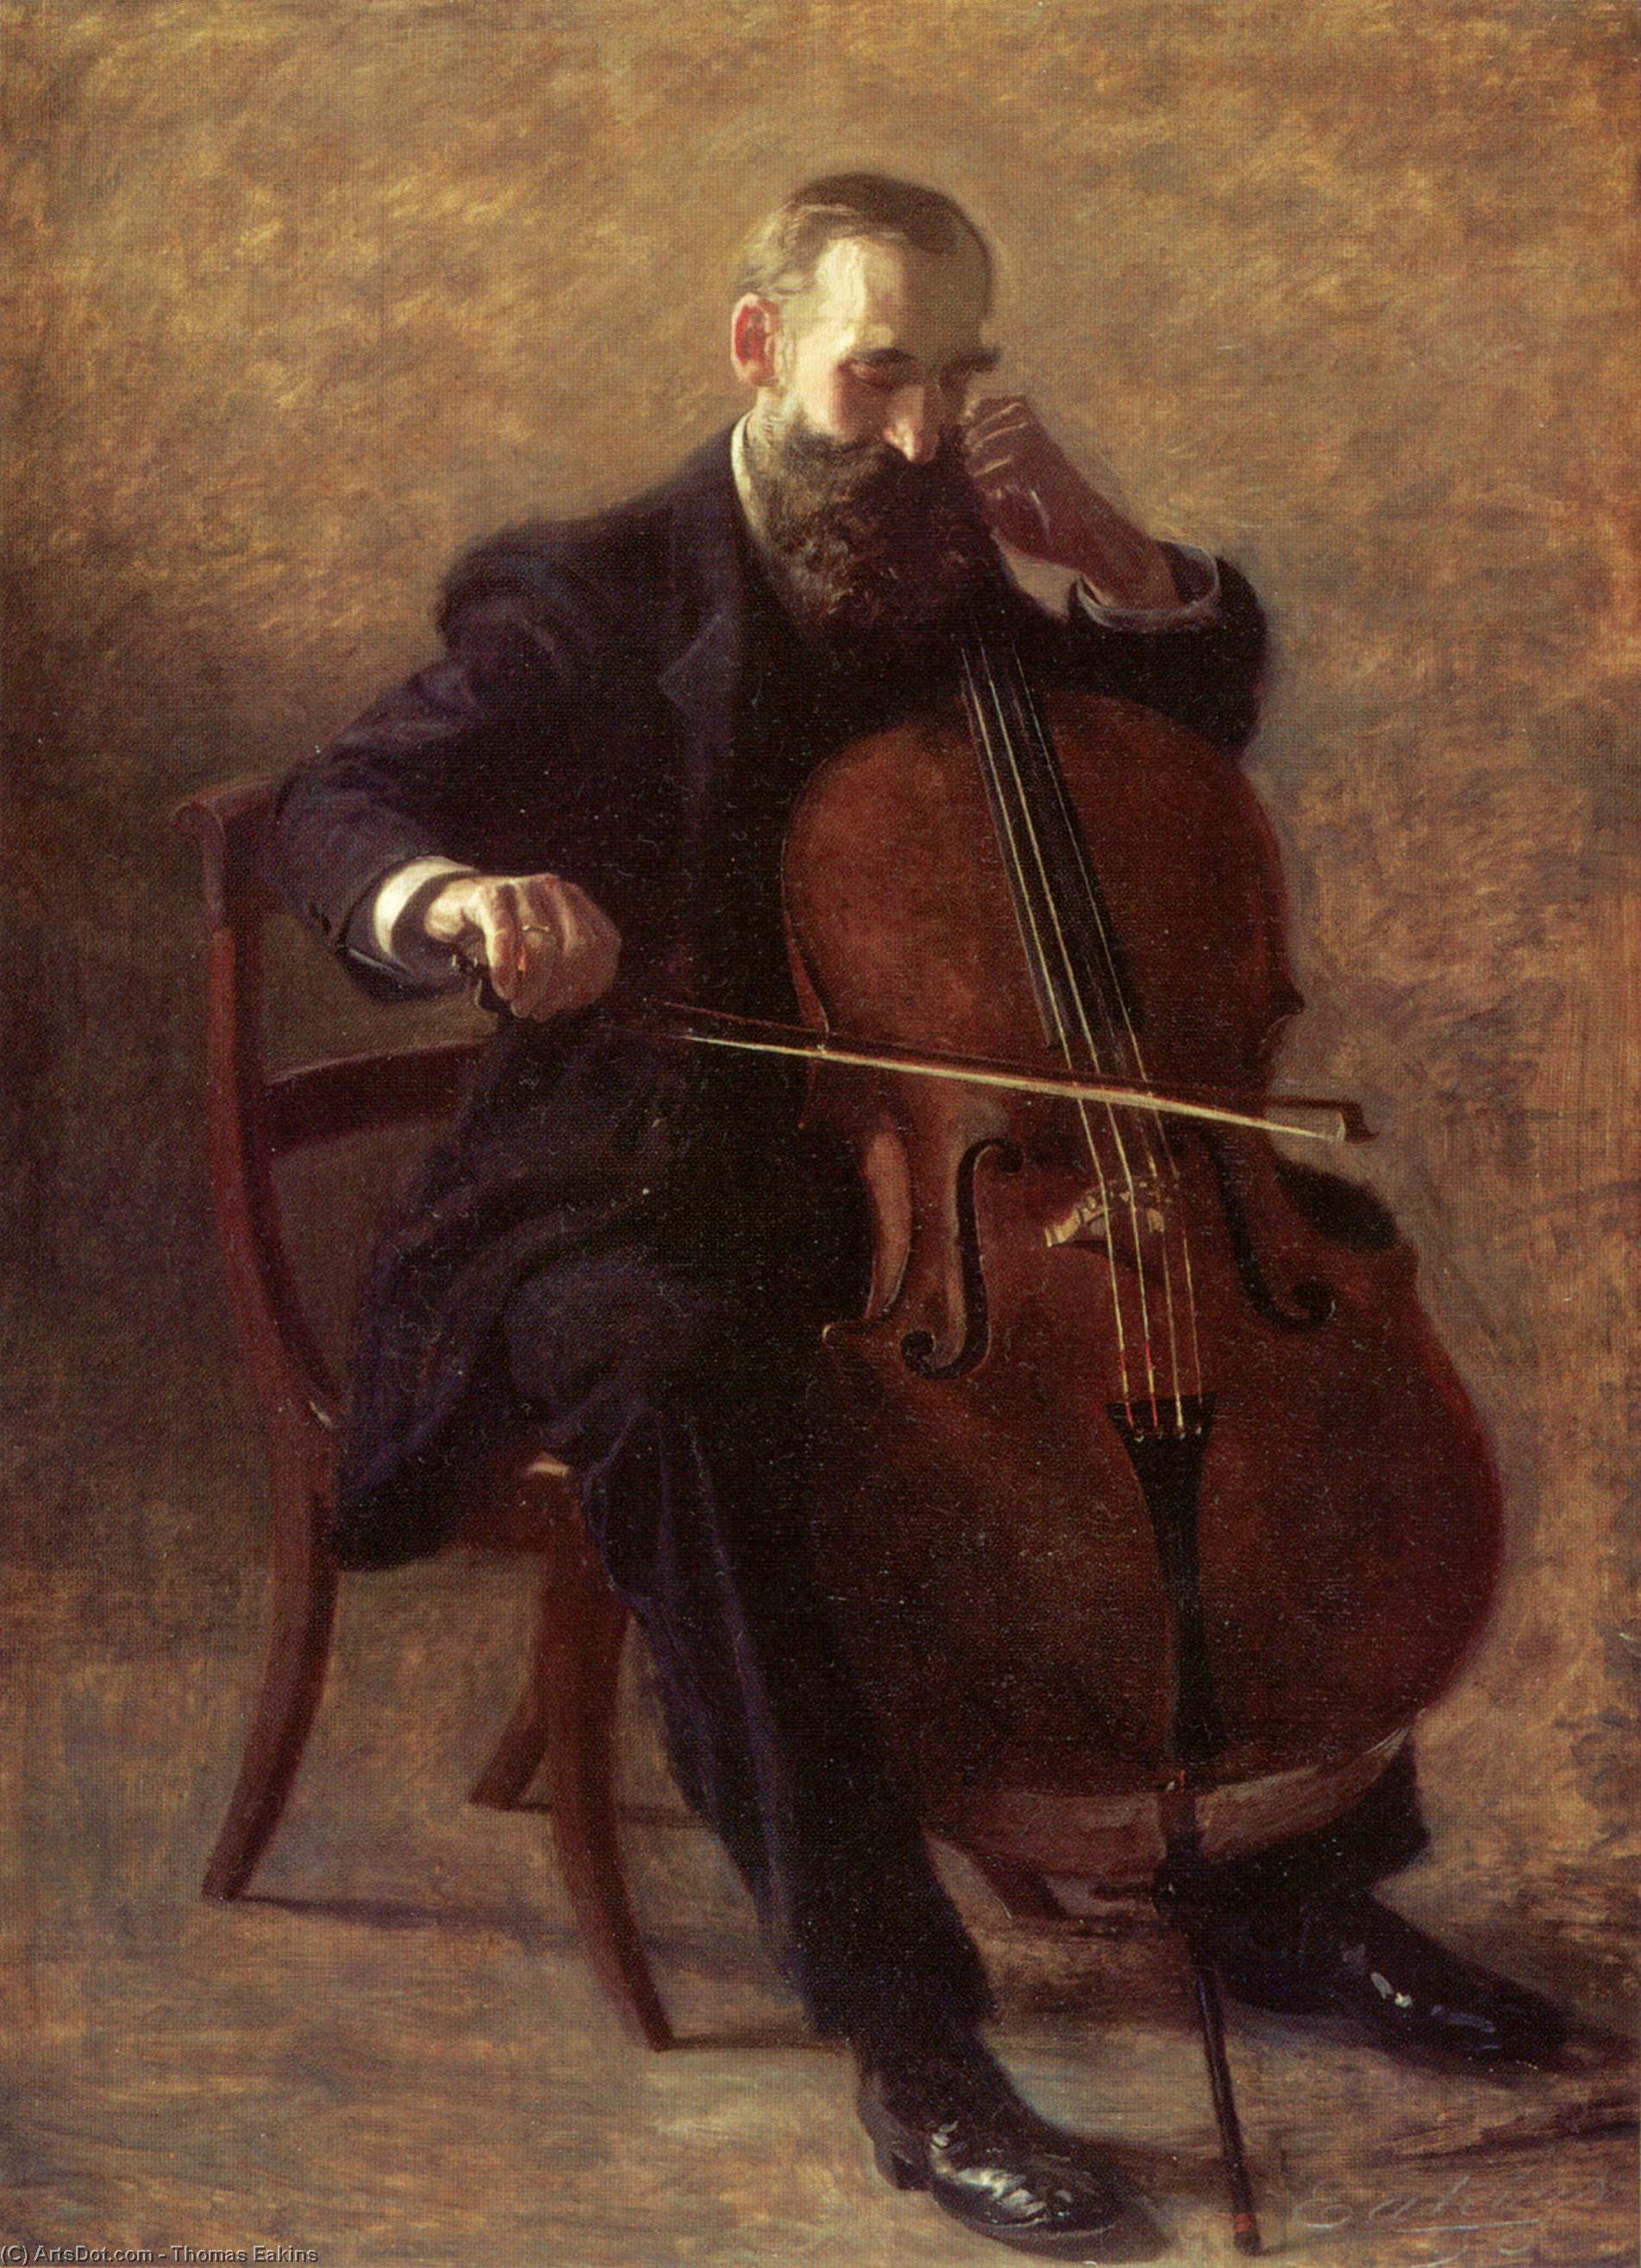 WikiOO.org - Encyclopedia of Fine Arts - Festés, Grafika Thomas Eakins - The Cello Player